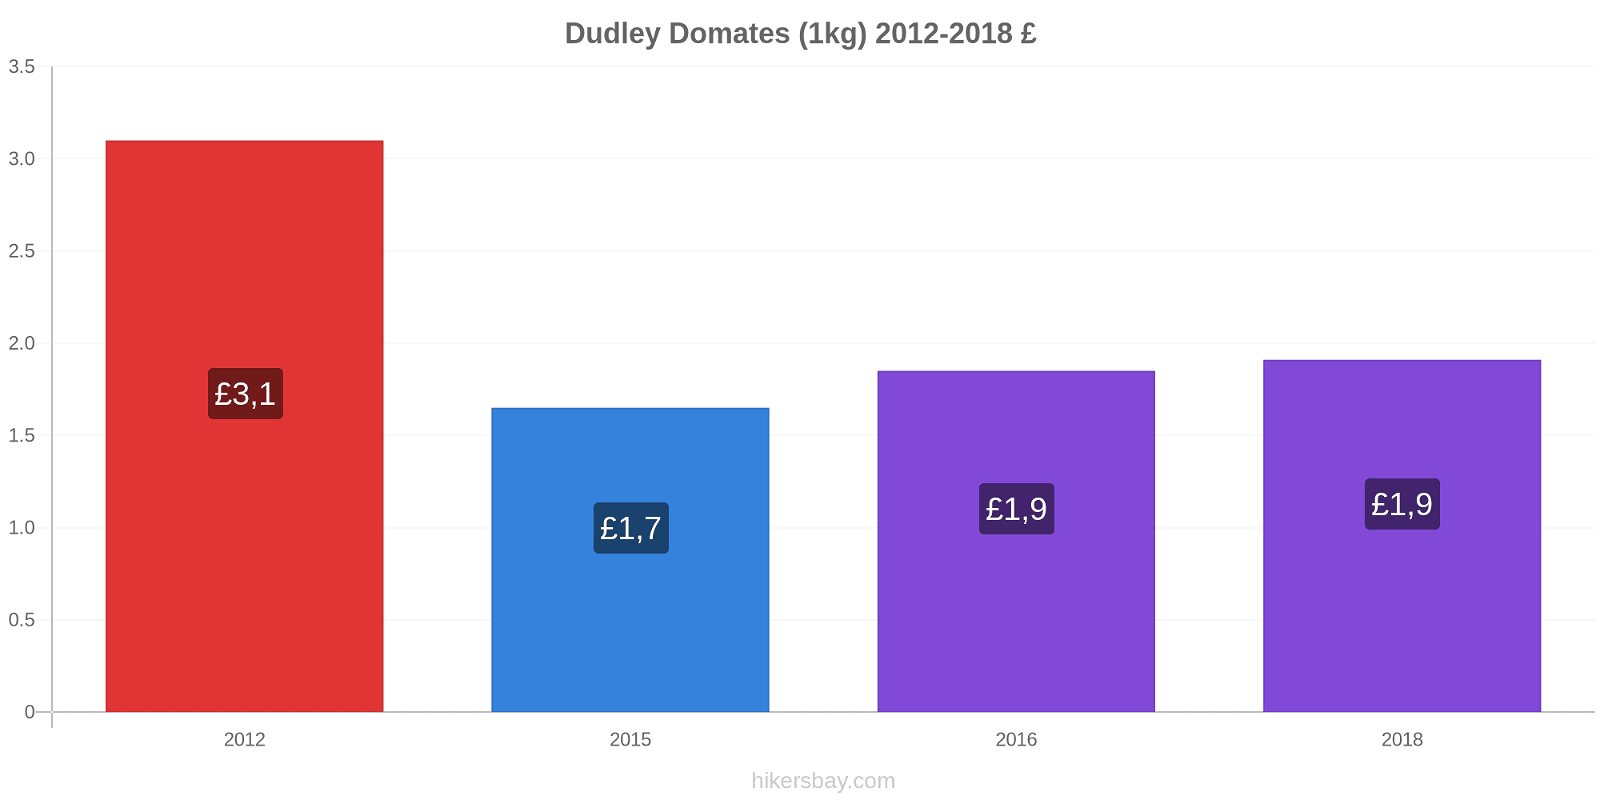 Dudley fiyat değişiklikleri Domates (1kg) hikersbay.com